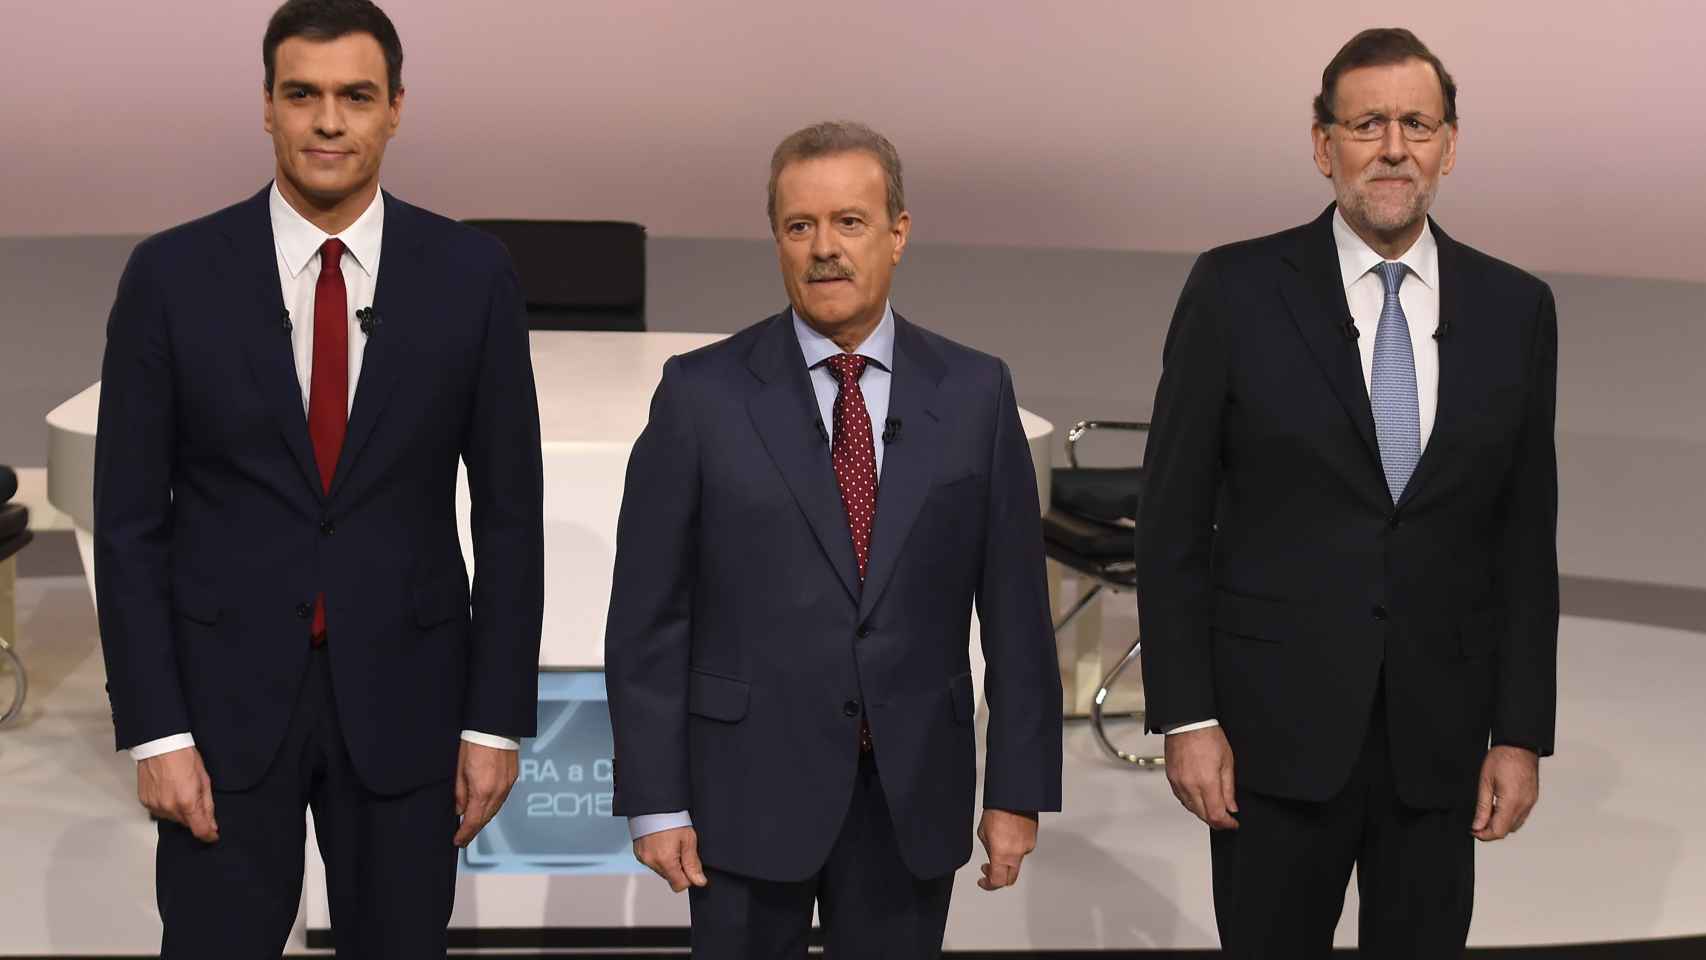 En debate con Rajoy también apostó por la misma combinación